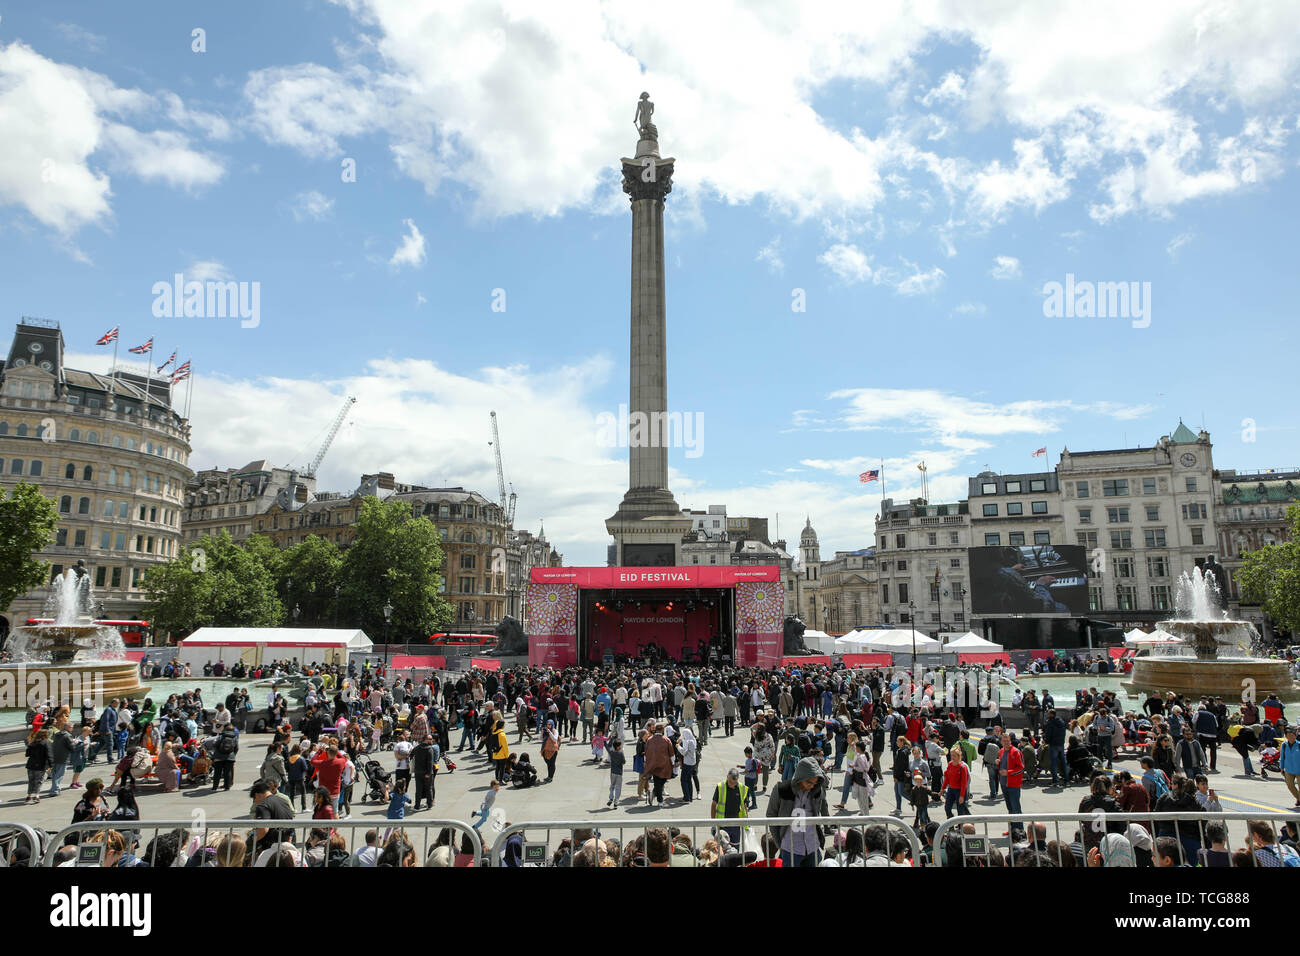 Trafalgar Square, Londra, Regno Unito. 8 Giugno 2019. Ballerini e musicisti sul palco come la folla gregge a Trafalgar Square per la festa di Eid. Penelope Barritt/Alamy Live News Foto Stock